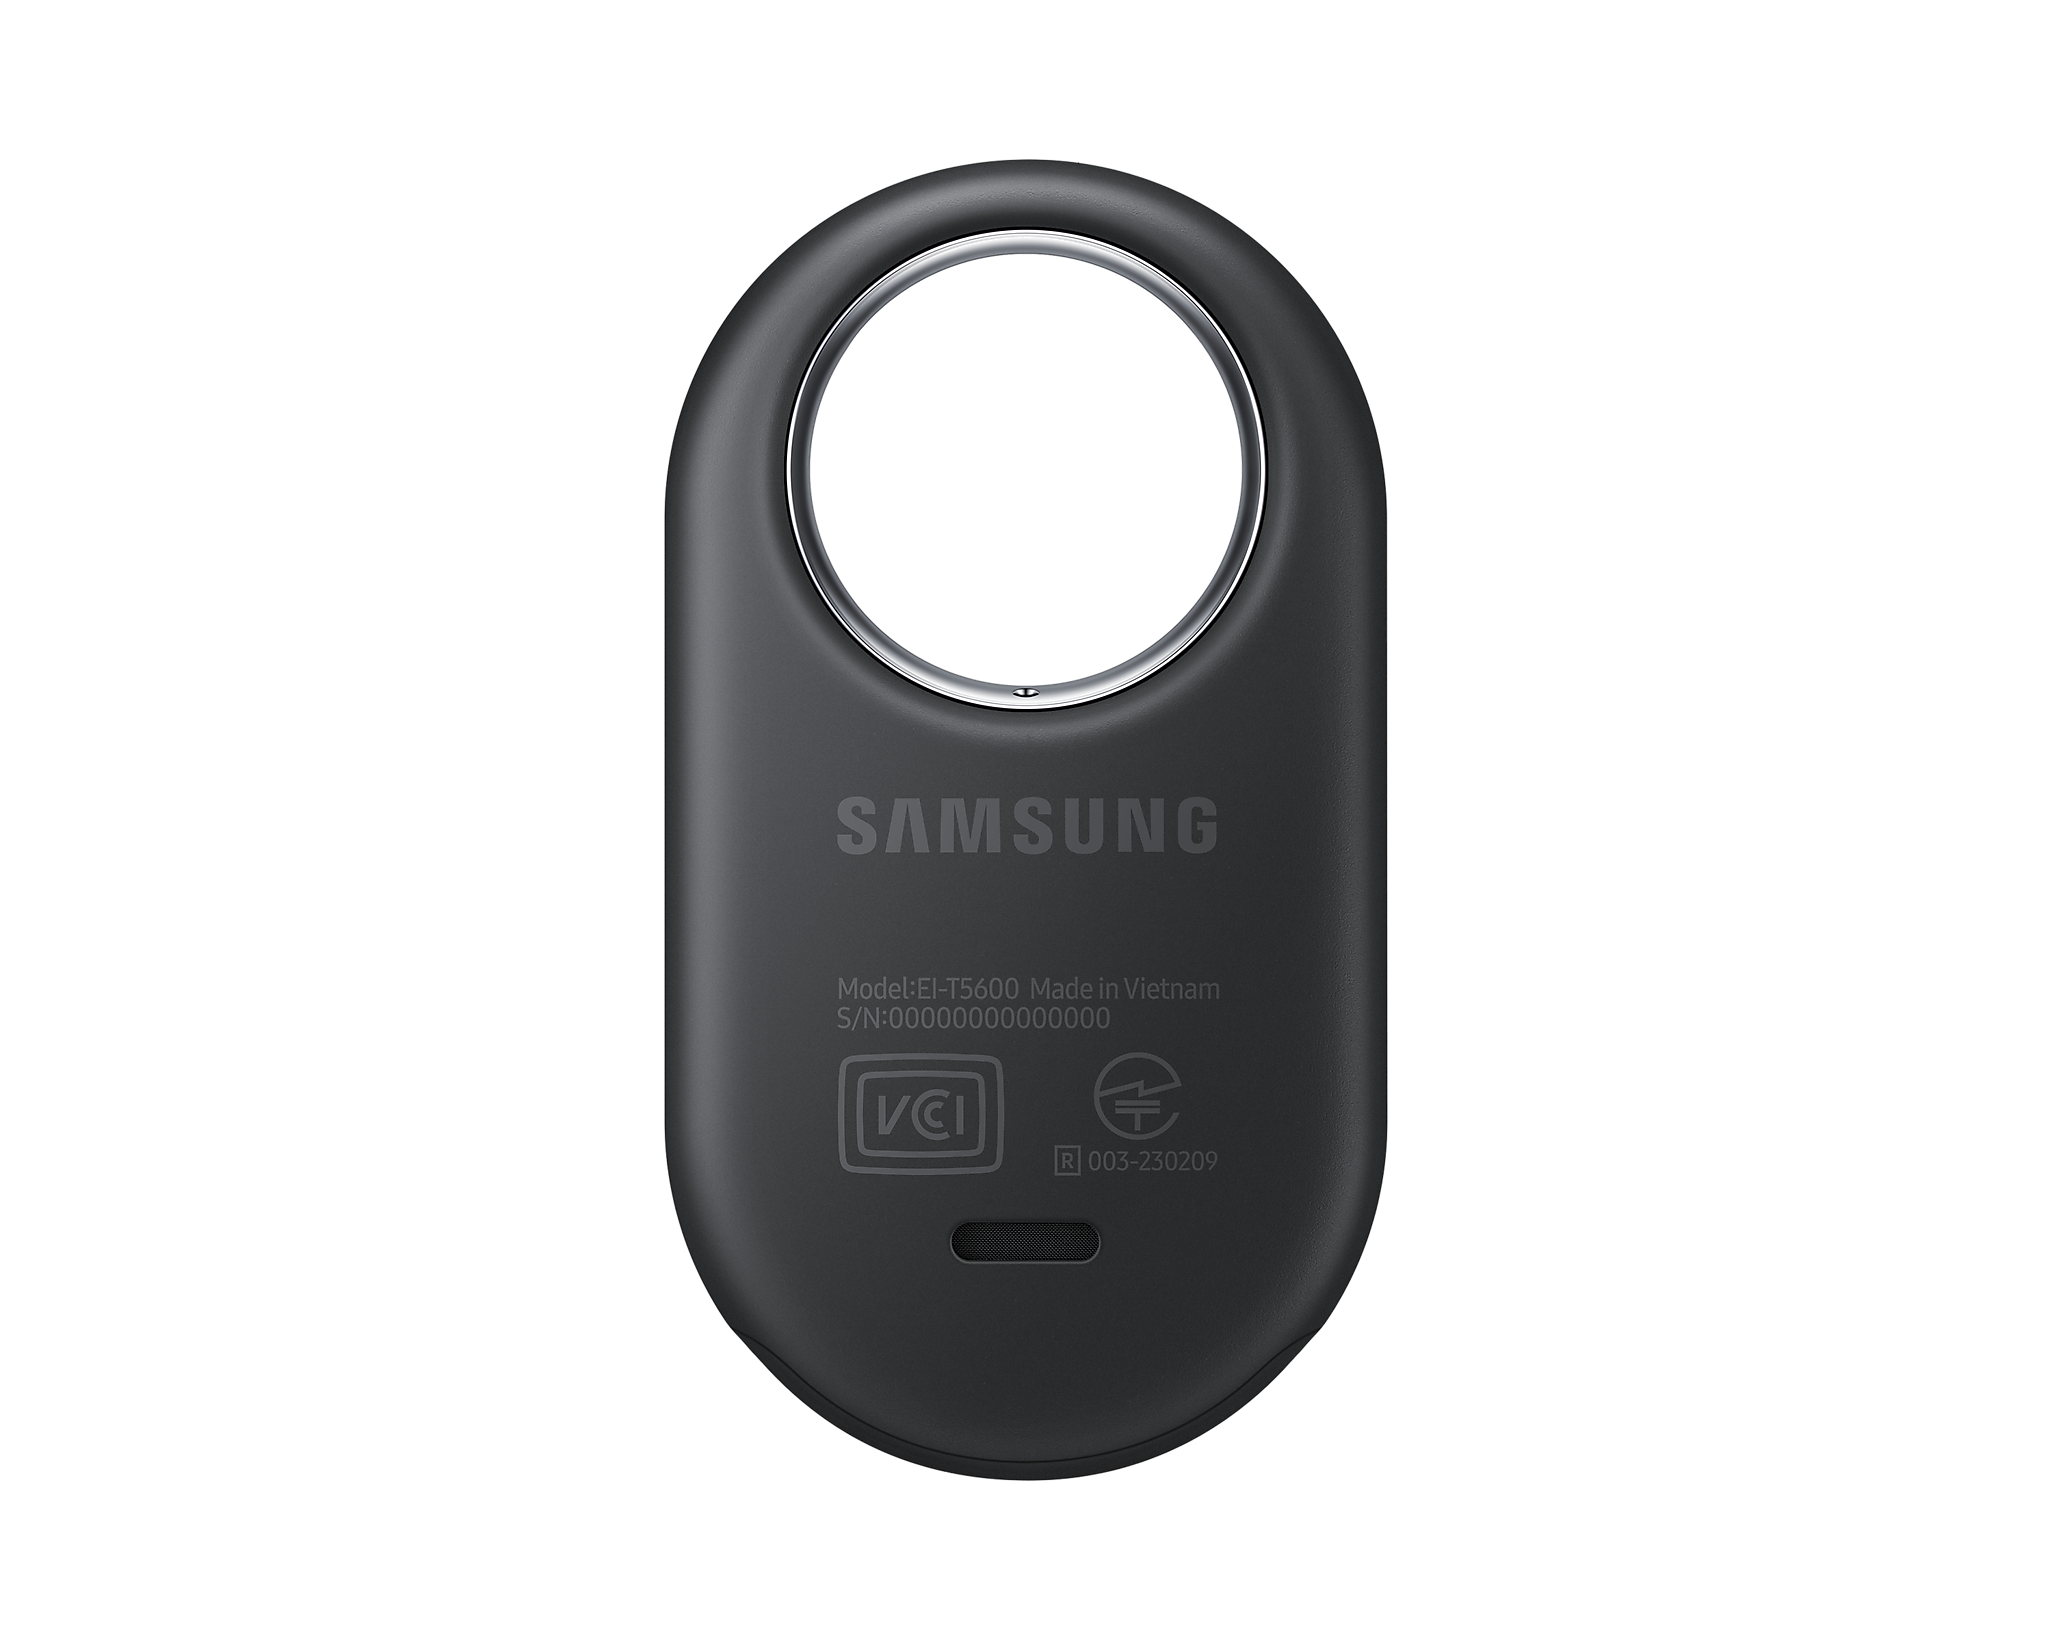 Thiết bị định vị Samsung Galaxy SmartTag 2 (EI-T5600) - Hàng Chính Hãng